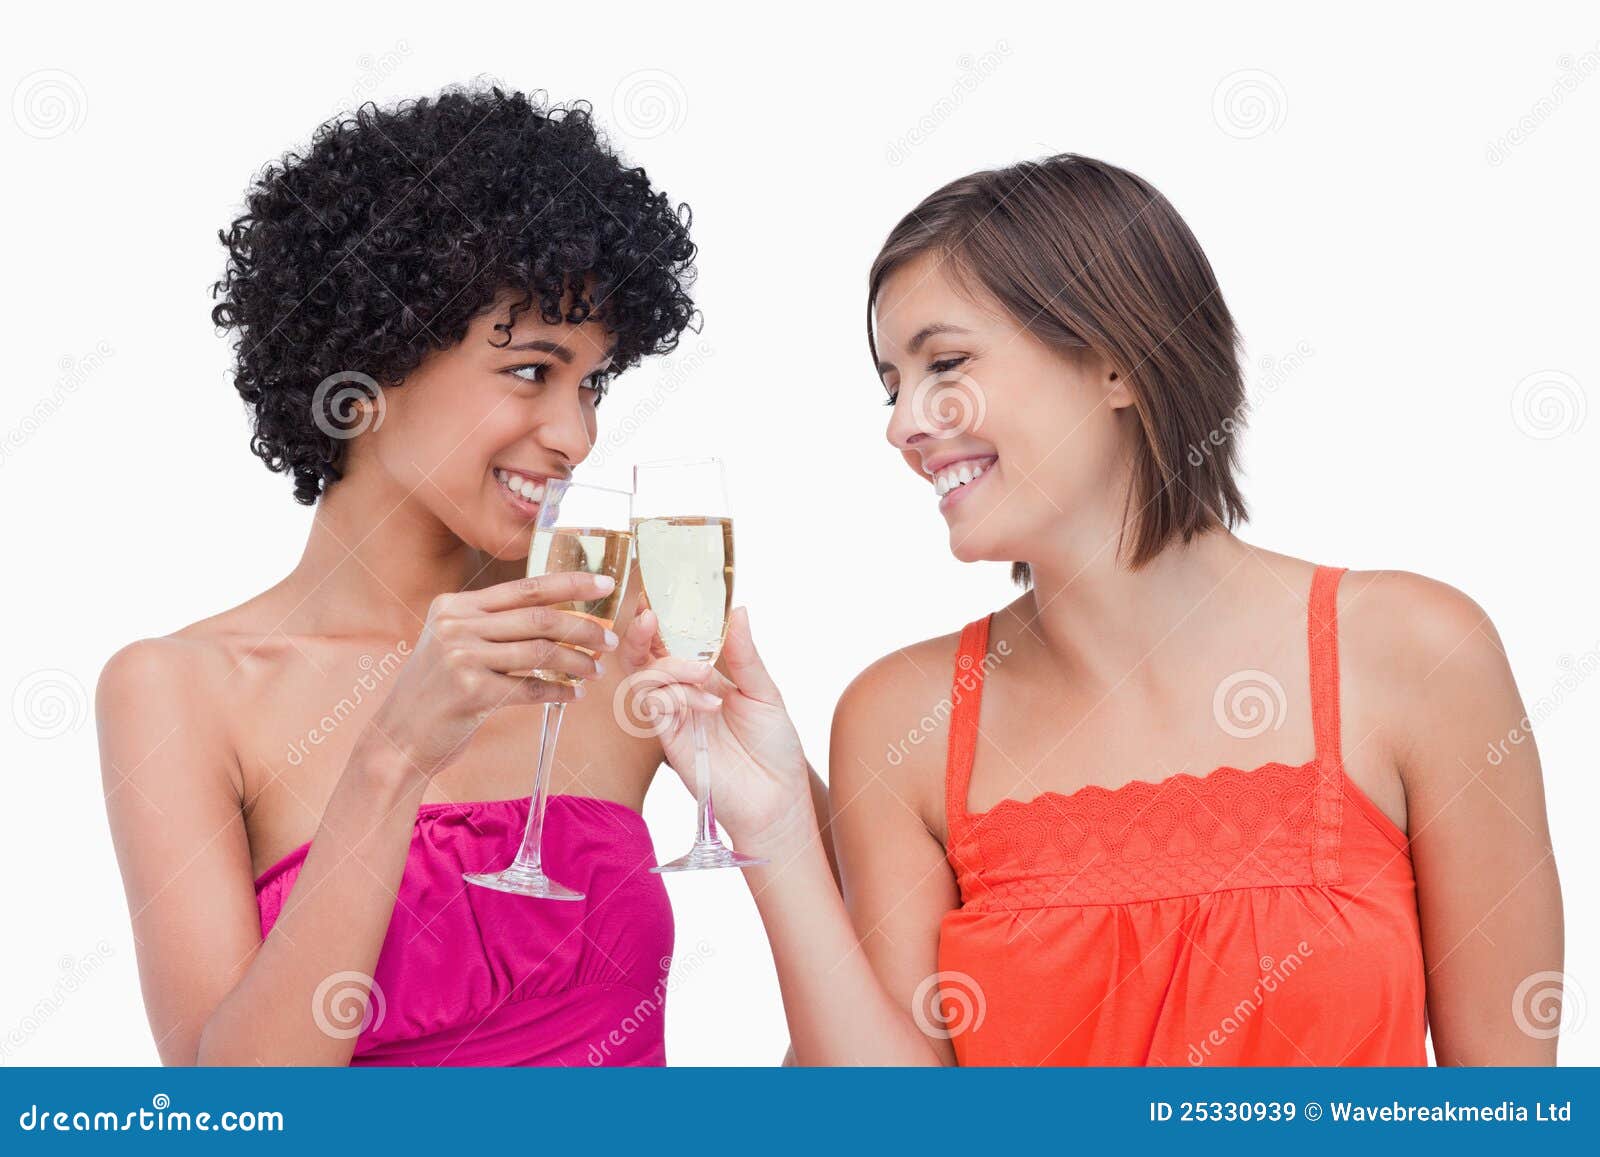 Women Clinking Glasses of Champagne Stock Image - Image of joyful ...